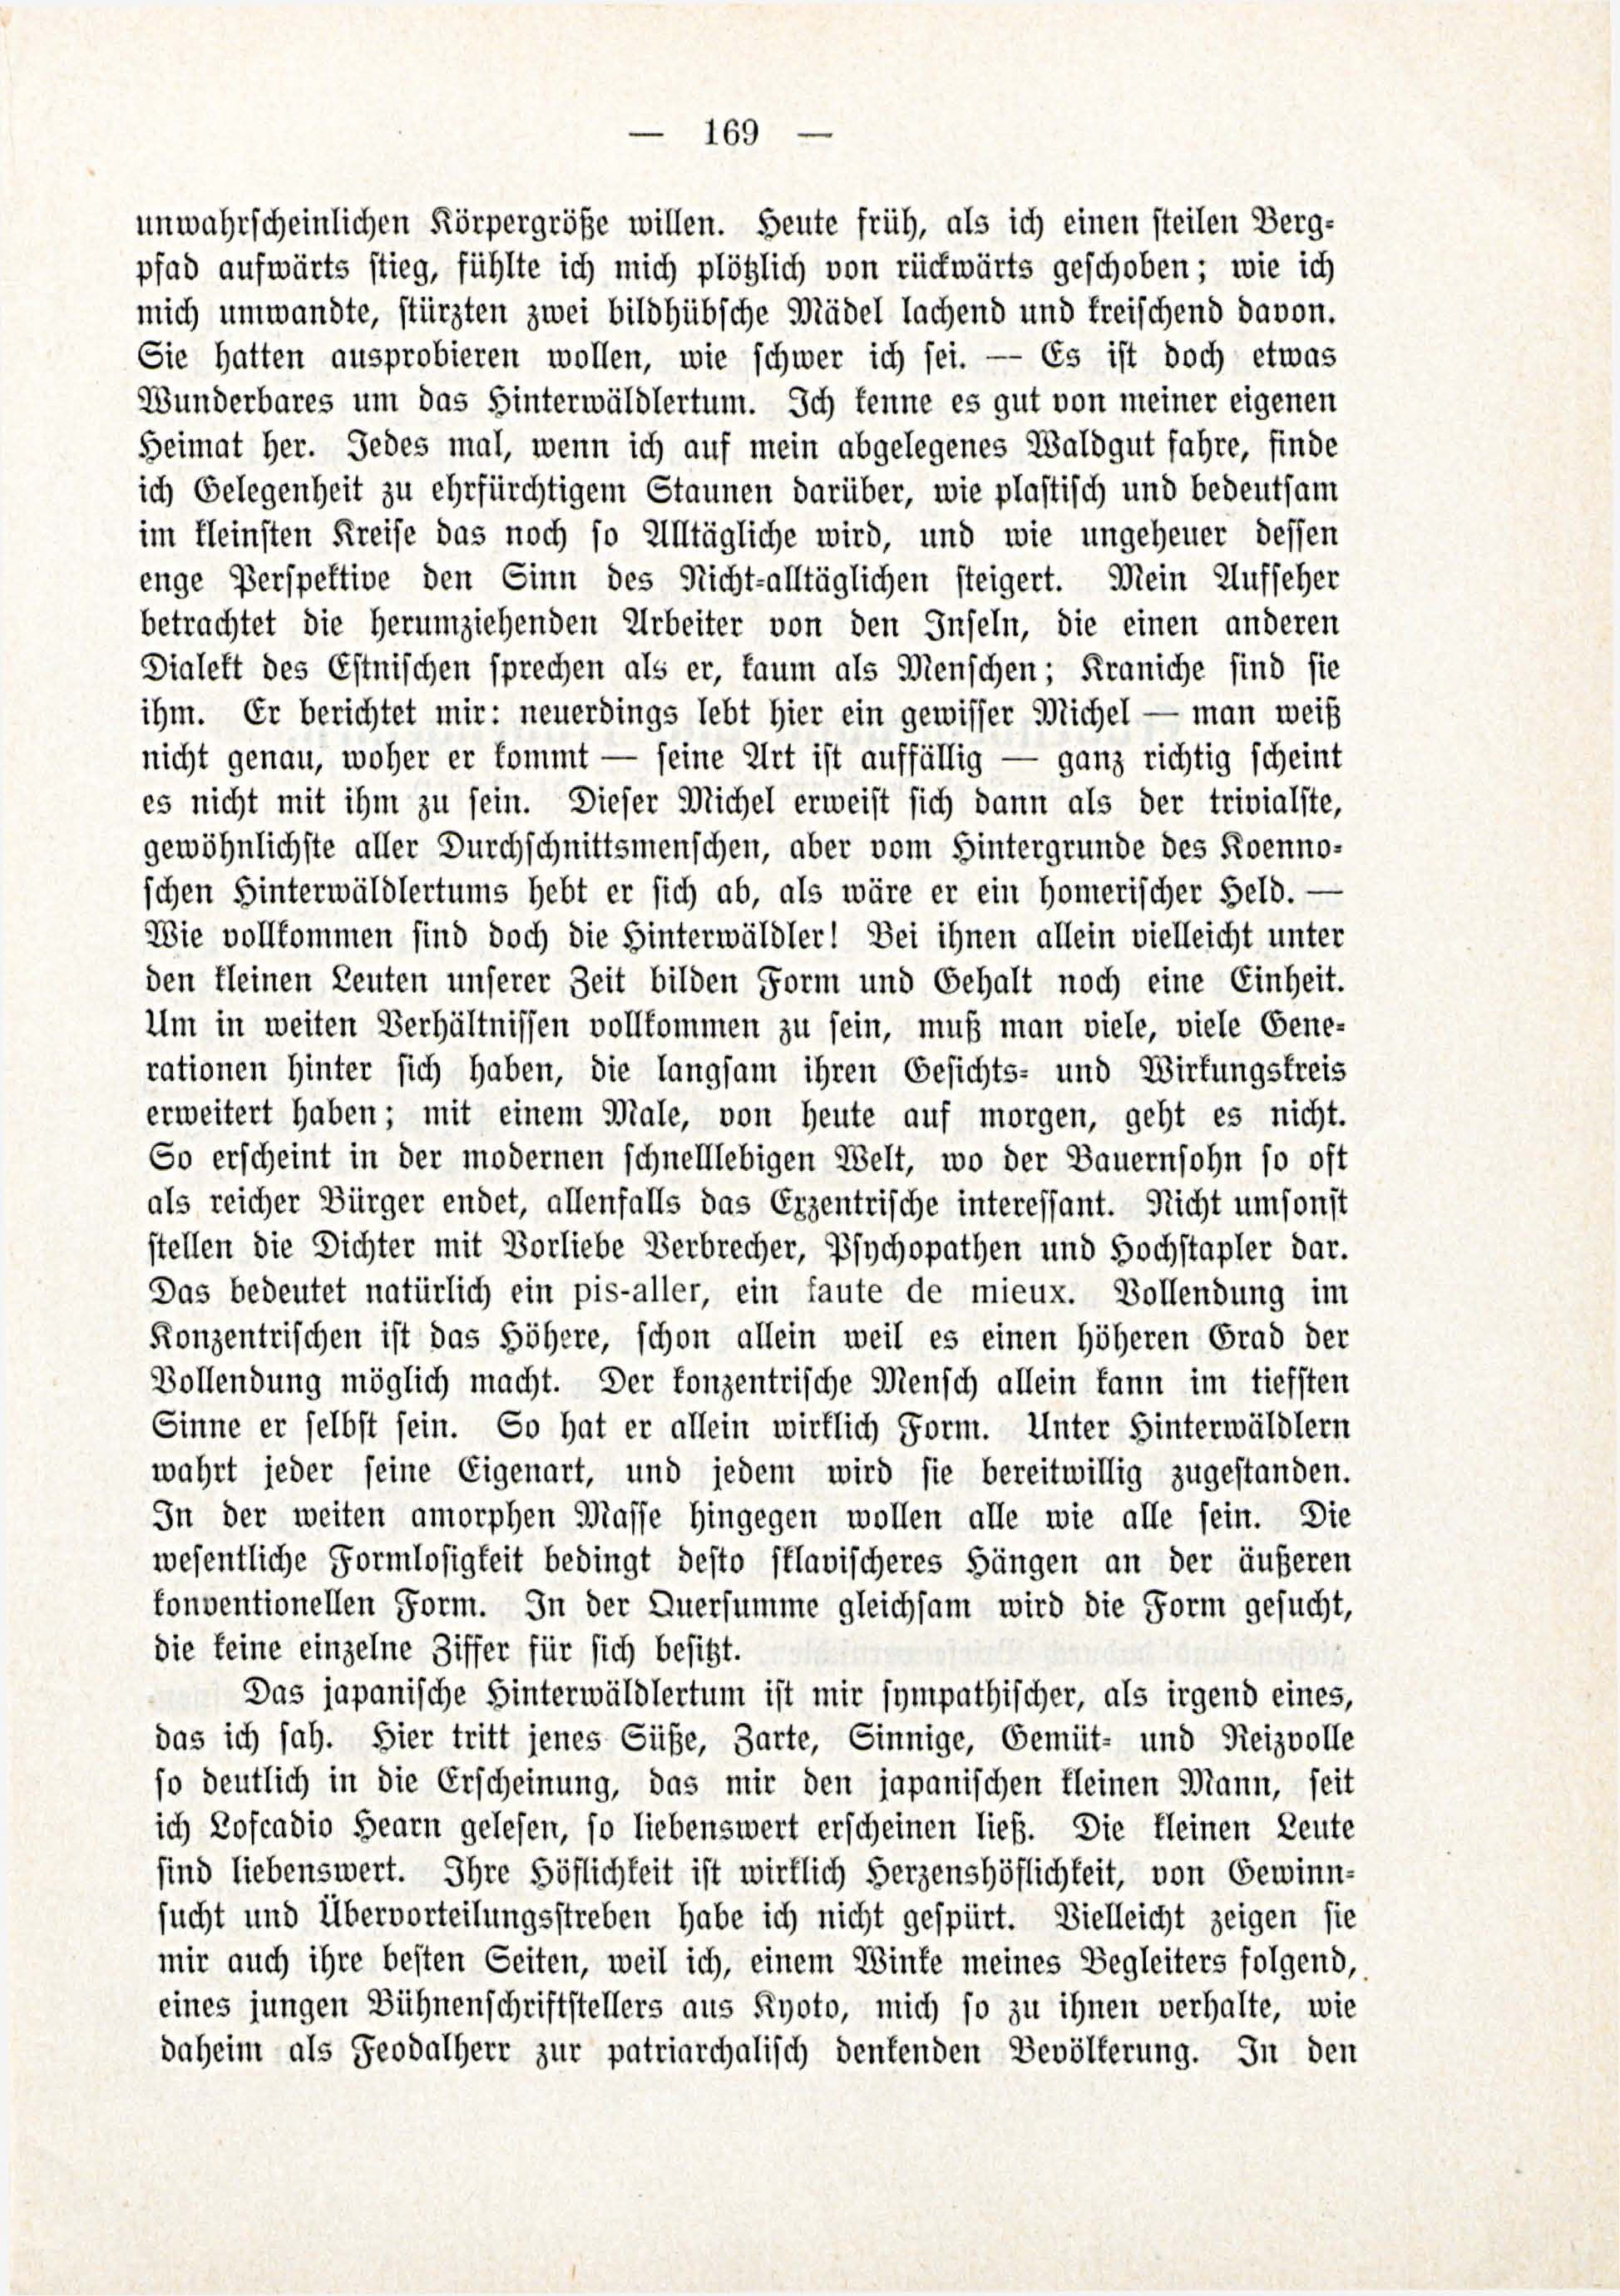 Deutsche Monatsschrift für Russland [3/03] (1914) | 15. (169) Main body of text